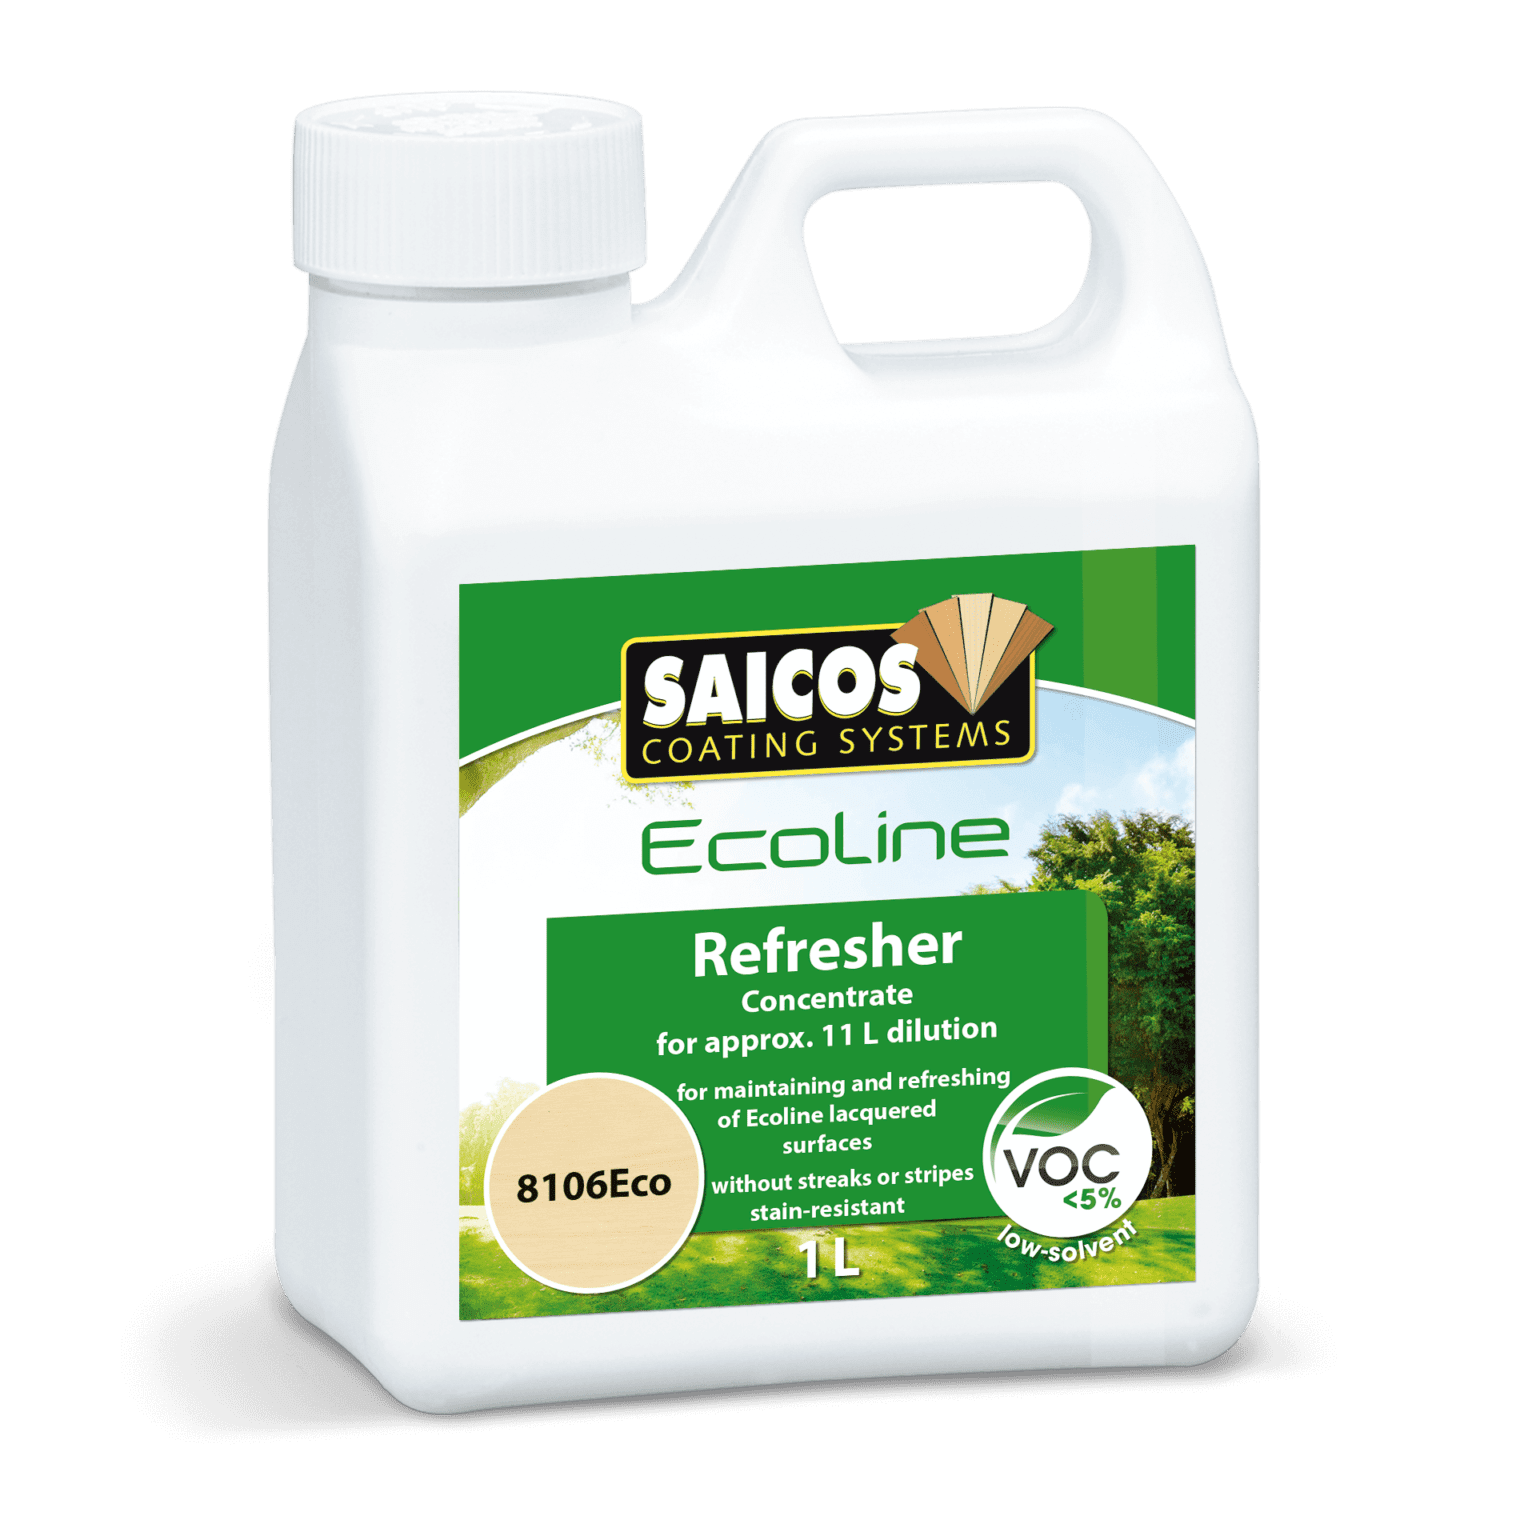 SAICOS Ecoline Refresher